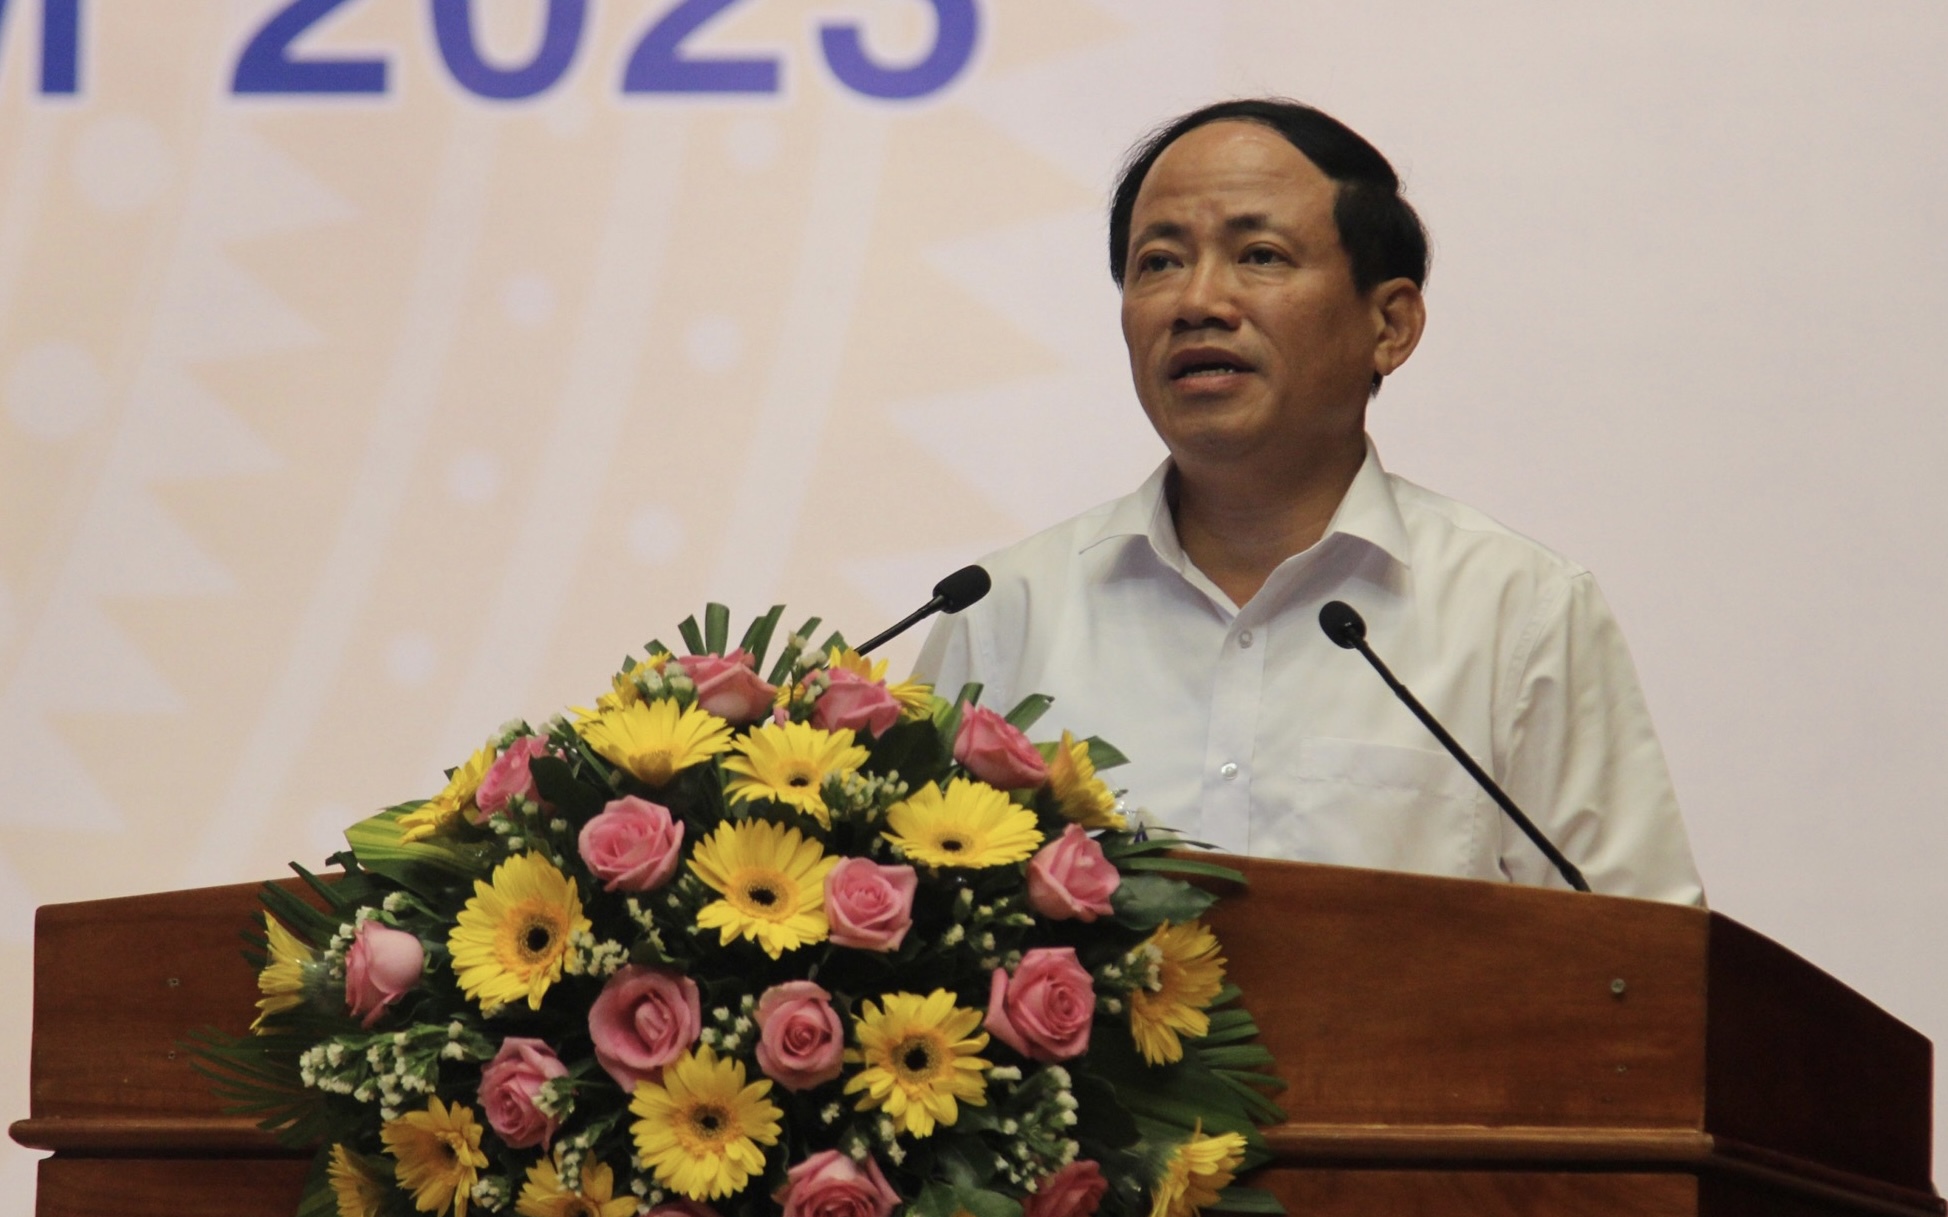 Chủ tịch tỉnh Bình Định: "Bên ngoài cứ tưởng đất đai là chỗ kiếm tiền béo bở, thực ra là chỗ nguy hiểm nhất"